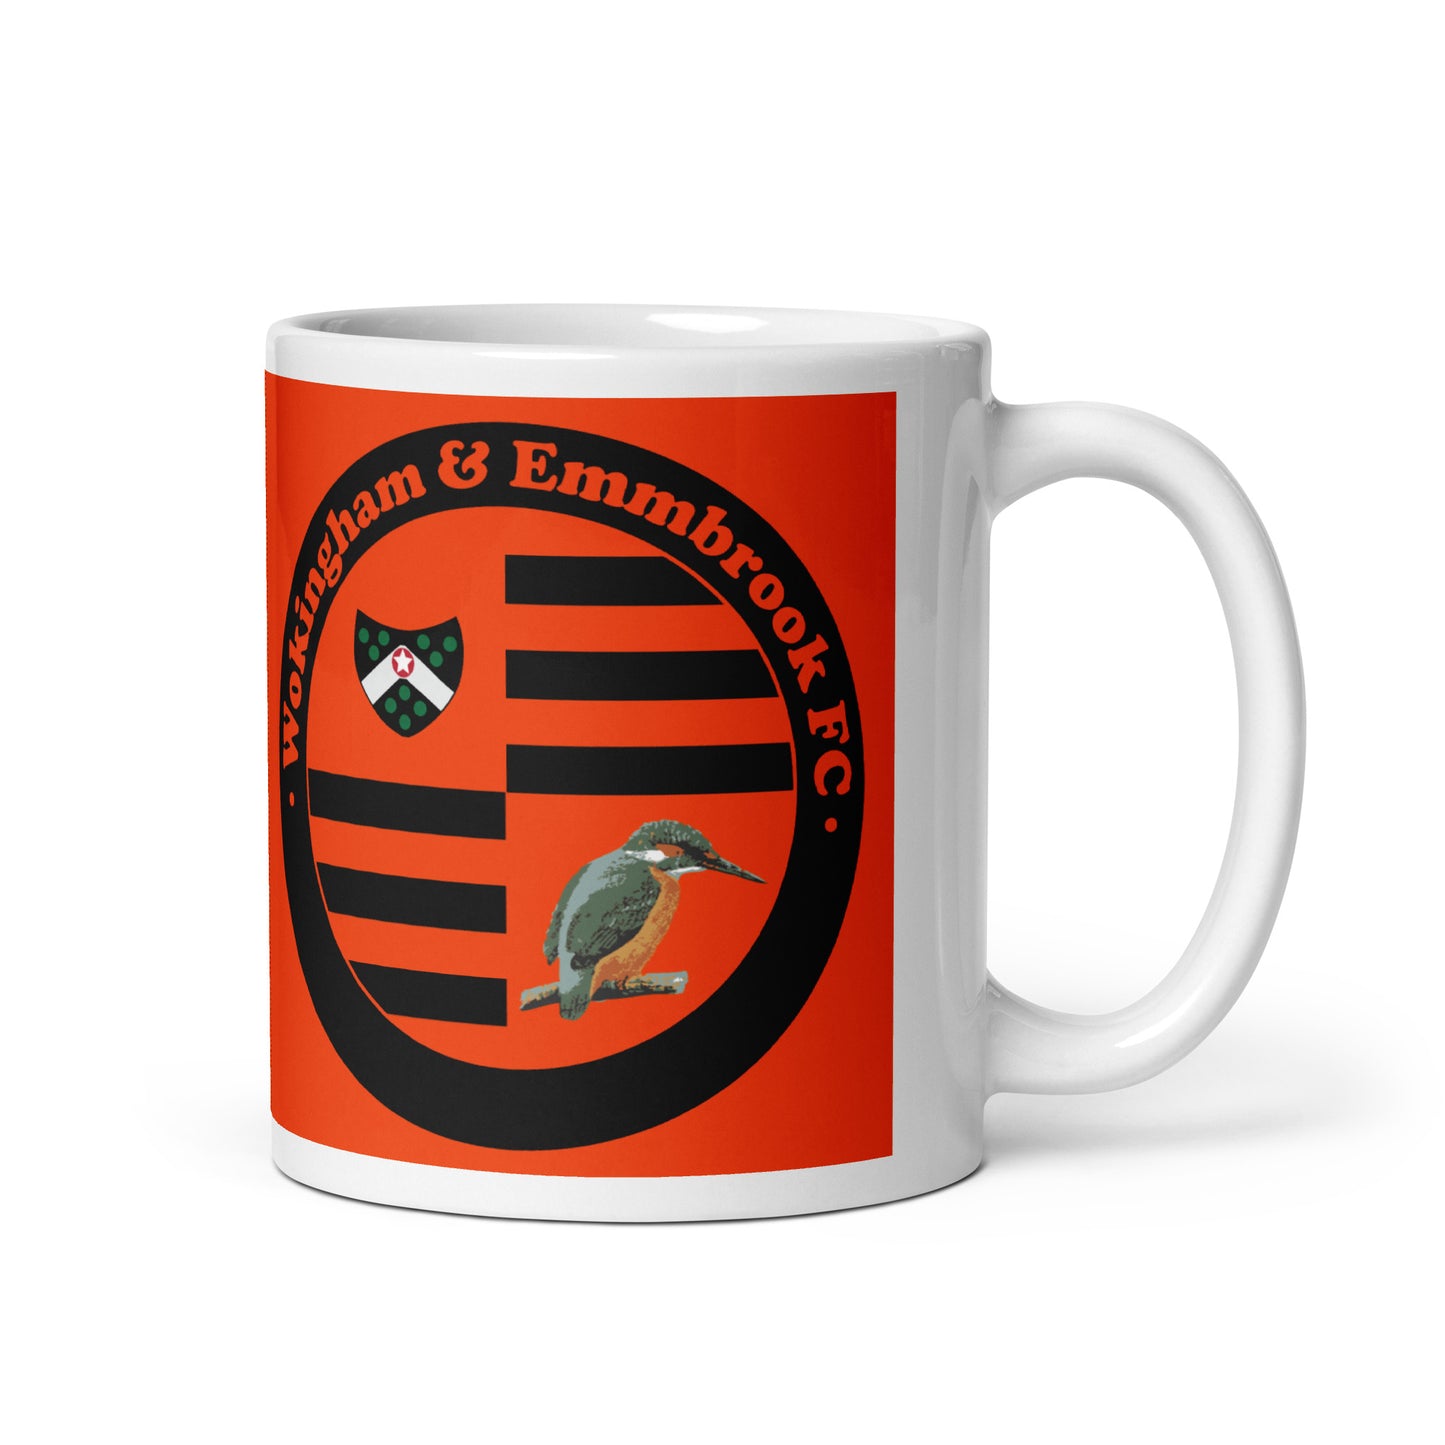 Wokingham & Emmbrook F.C Mug